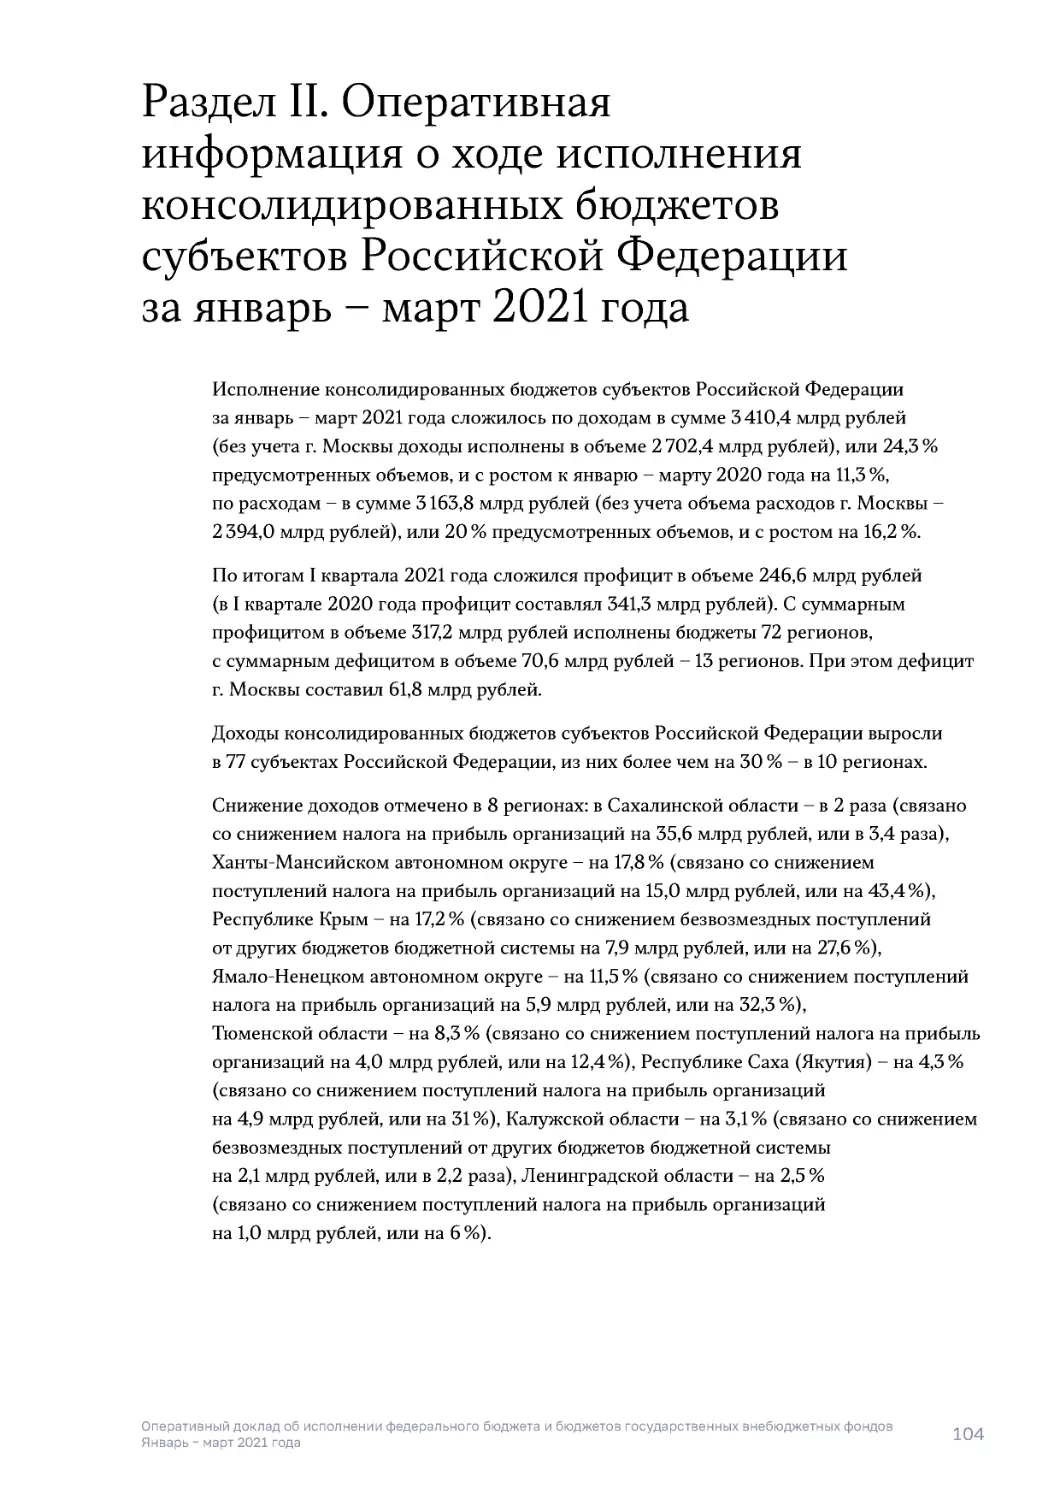 Раздел II. Оперативная информация о ходе исполнения консолидированных бюджетов субъектов Российской Федерации за январь – март 2021 года